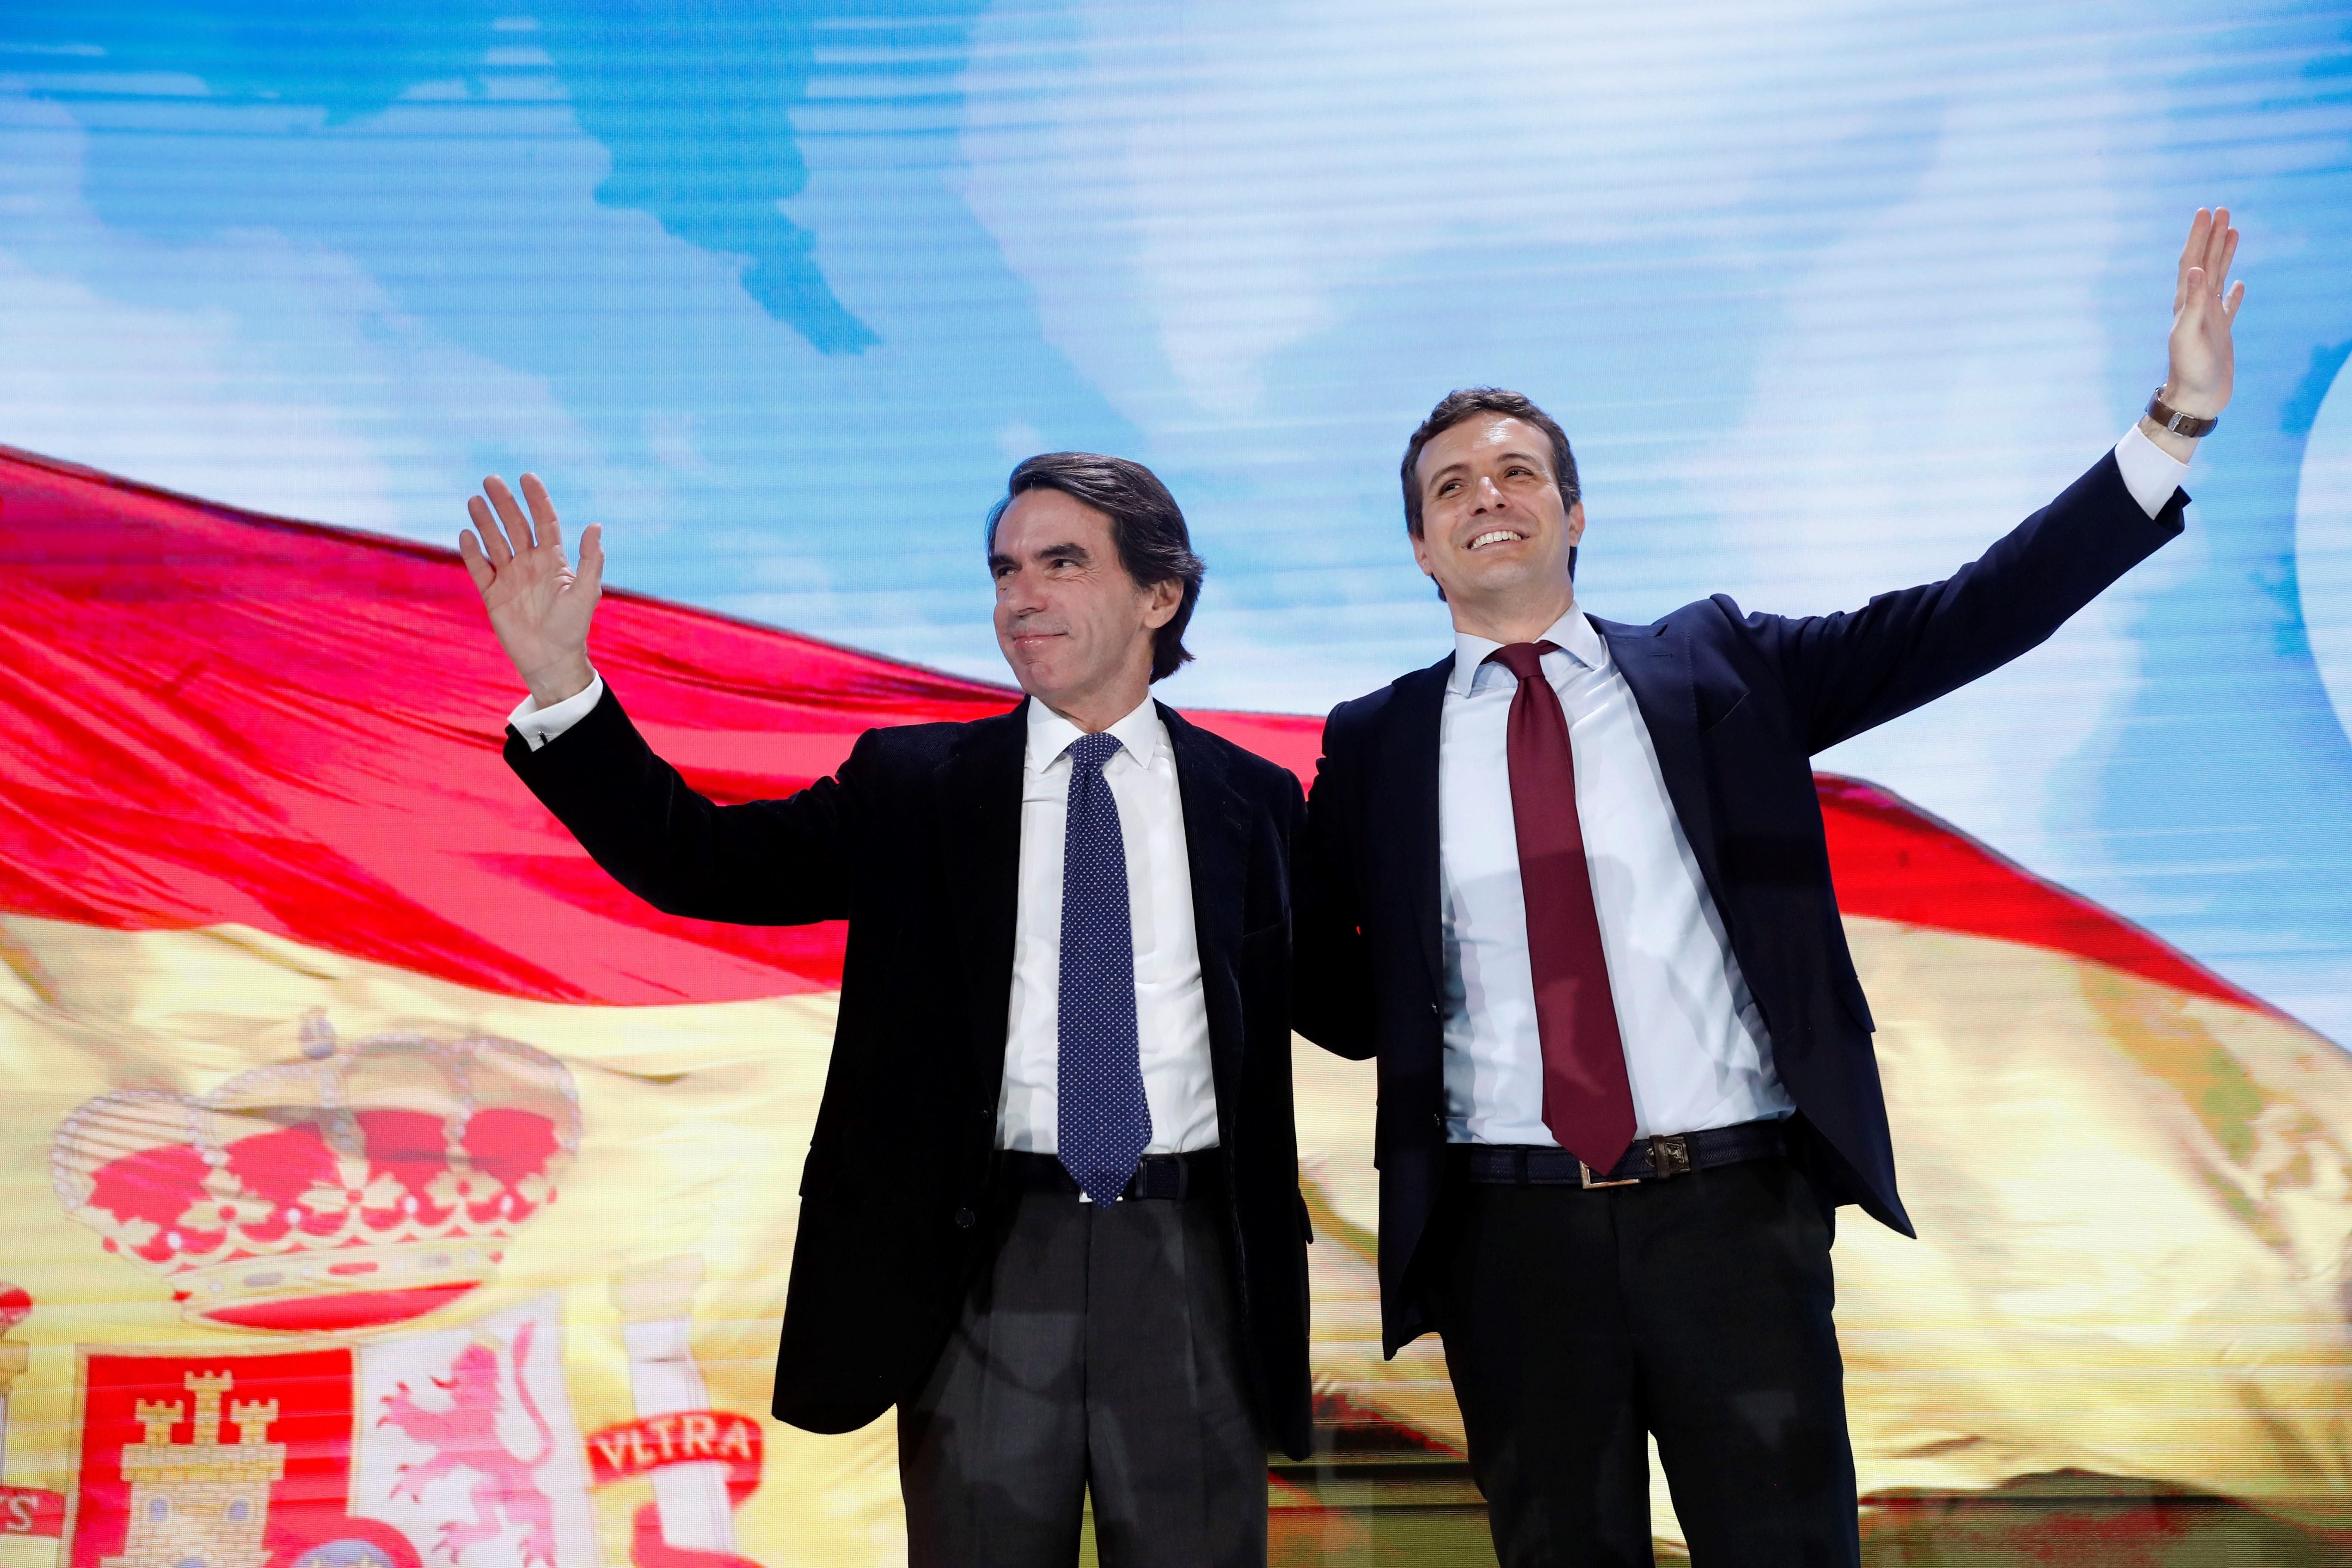 La Faes d'Aznar acusa els votants de centredreta d'"ignorància temerària"